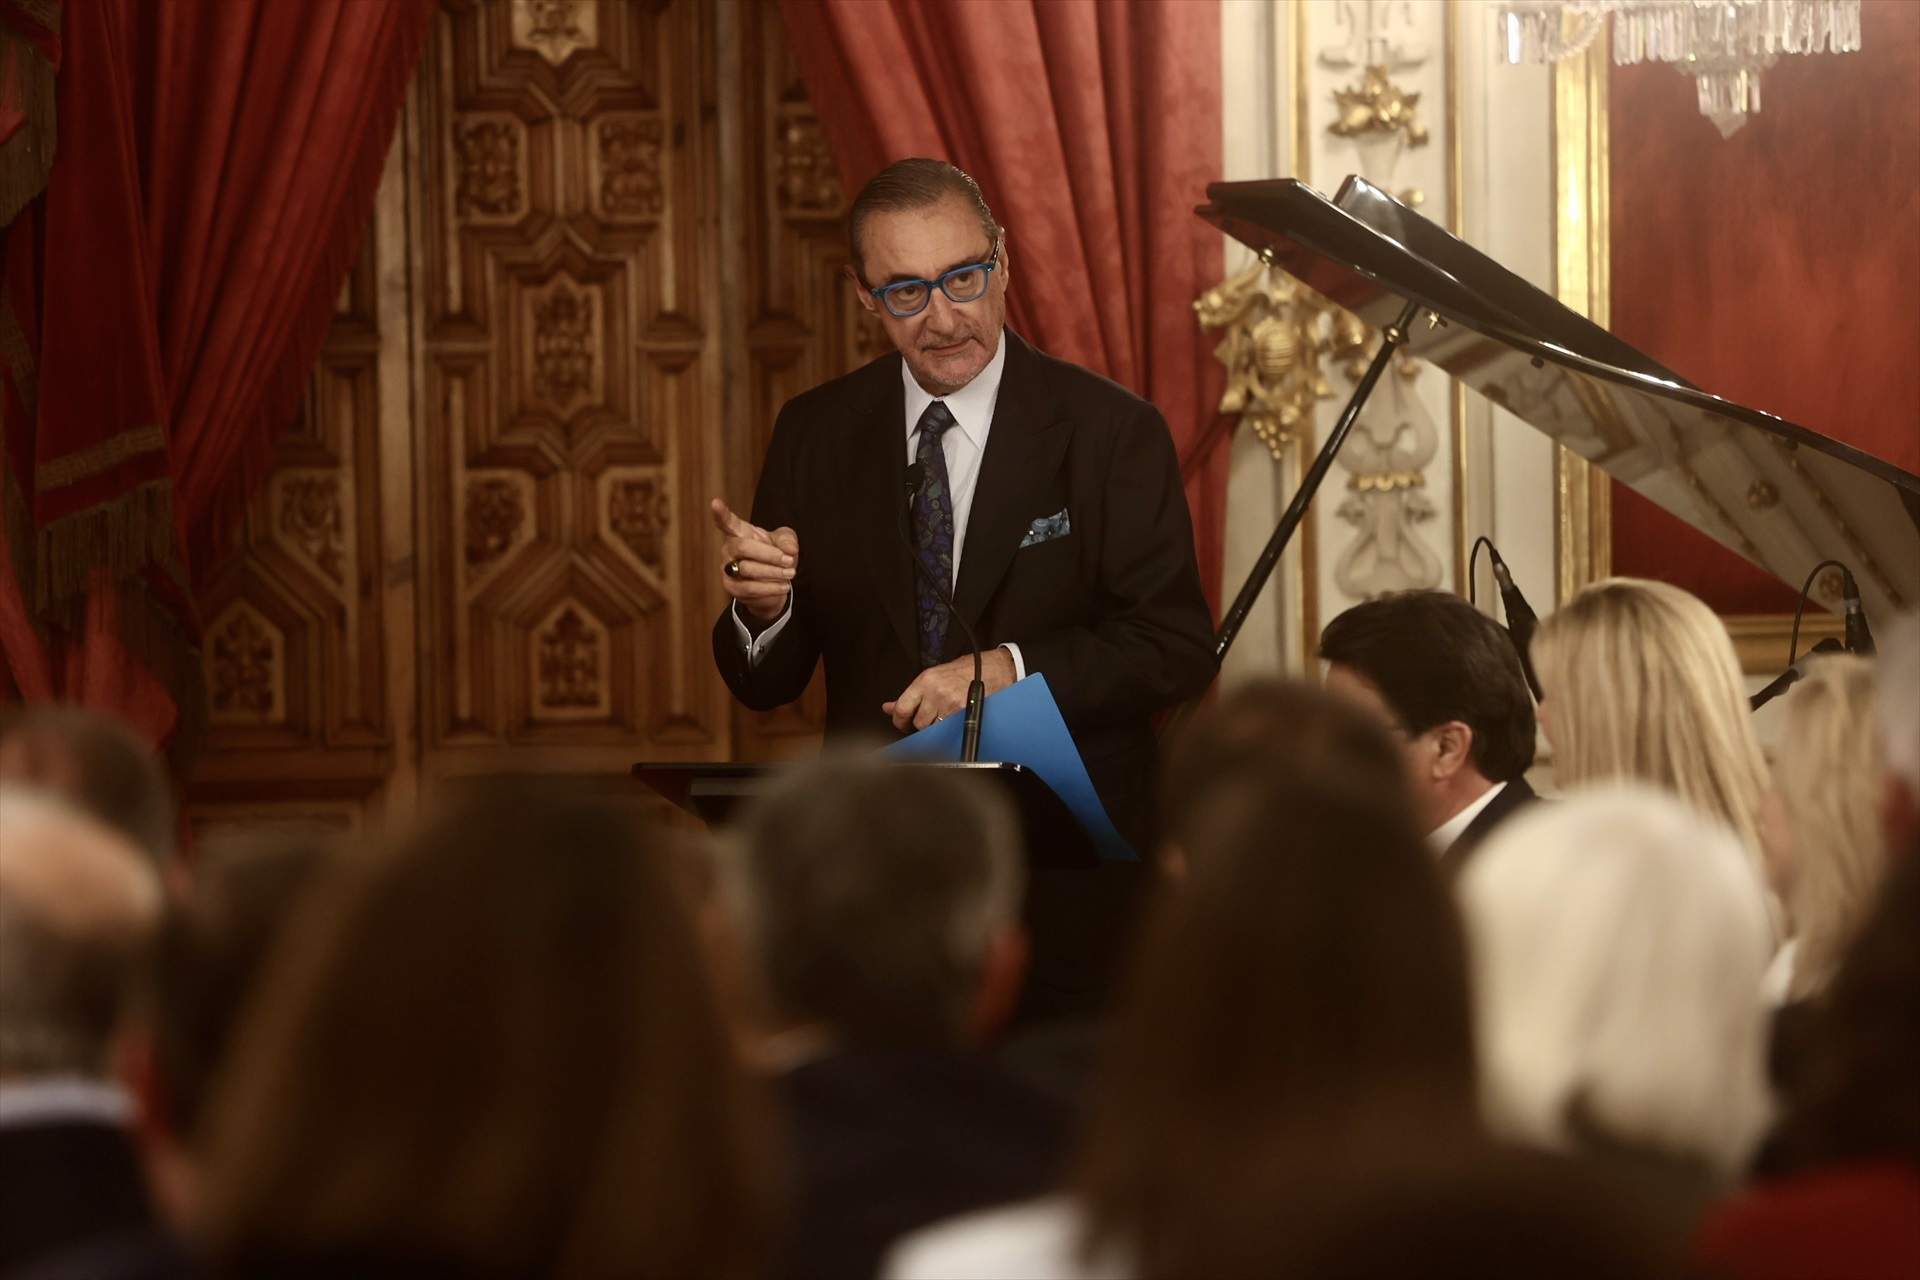 El periodista Carlos Herrera reconfirma la seva candidatura a la presidència de la RFEF